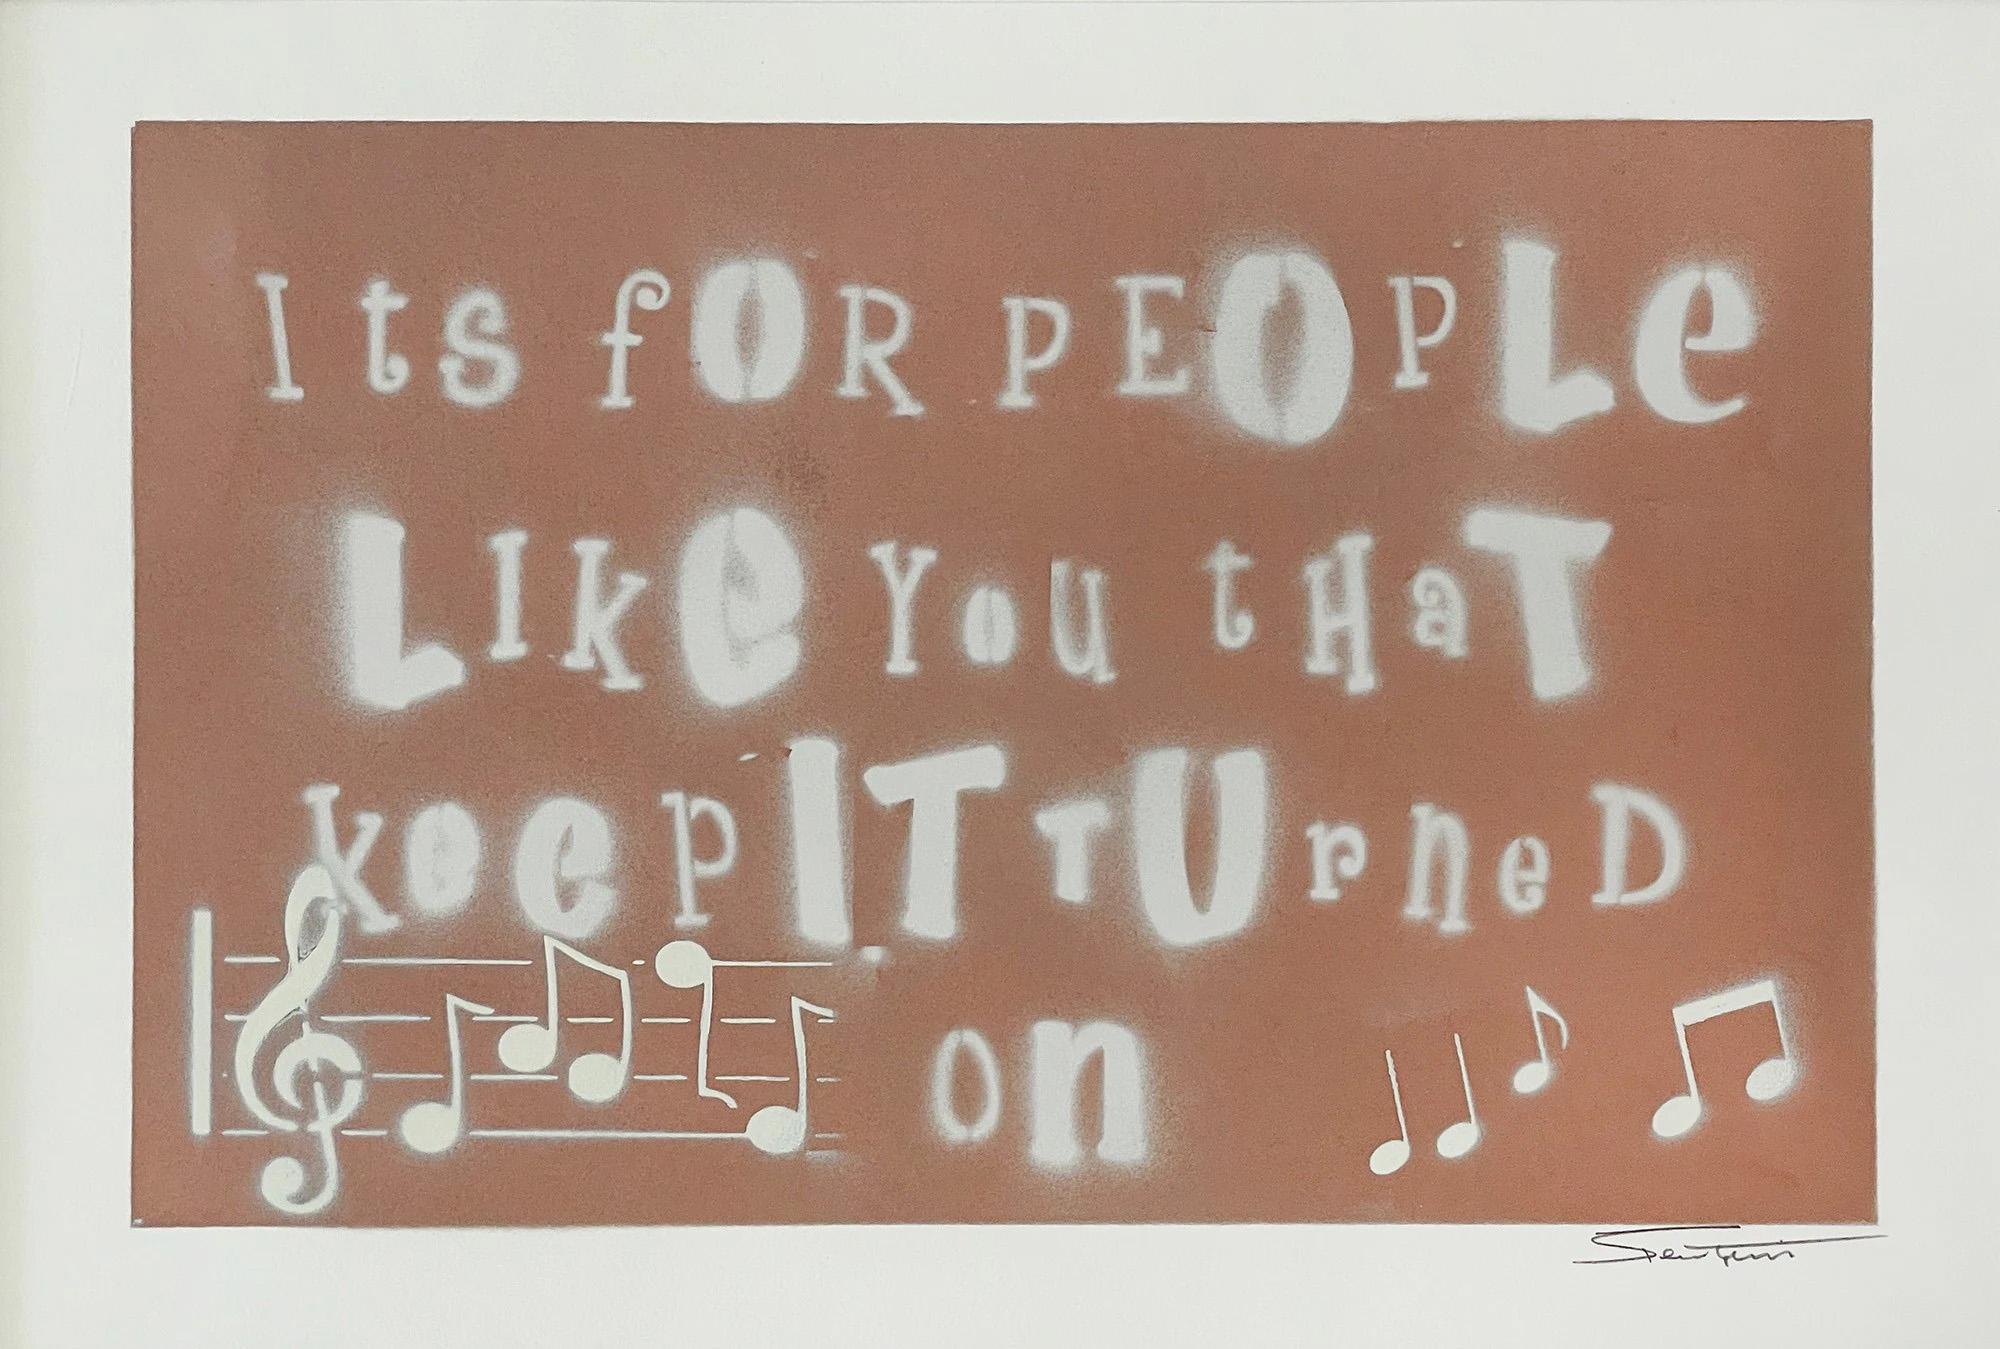 MEDIUM: Gemischte Medien auf Papier
BILDGRÖSSE: 22" x 30"
SKU: BT0005

Bernie Taupin betrachtet die Kunst als visuelle Erweiterung seiner Songtexte. Inspiriert von "Your Song", veröffentlicht 1971.